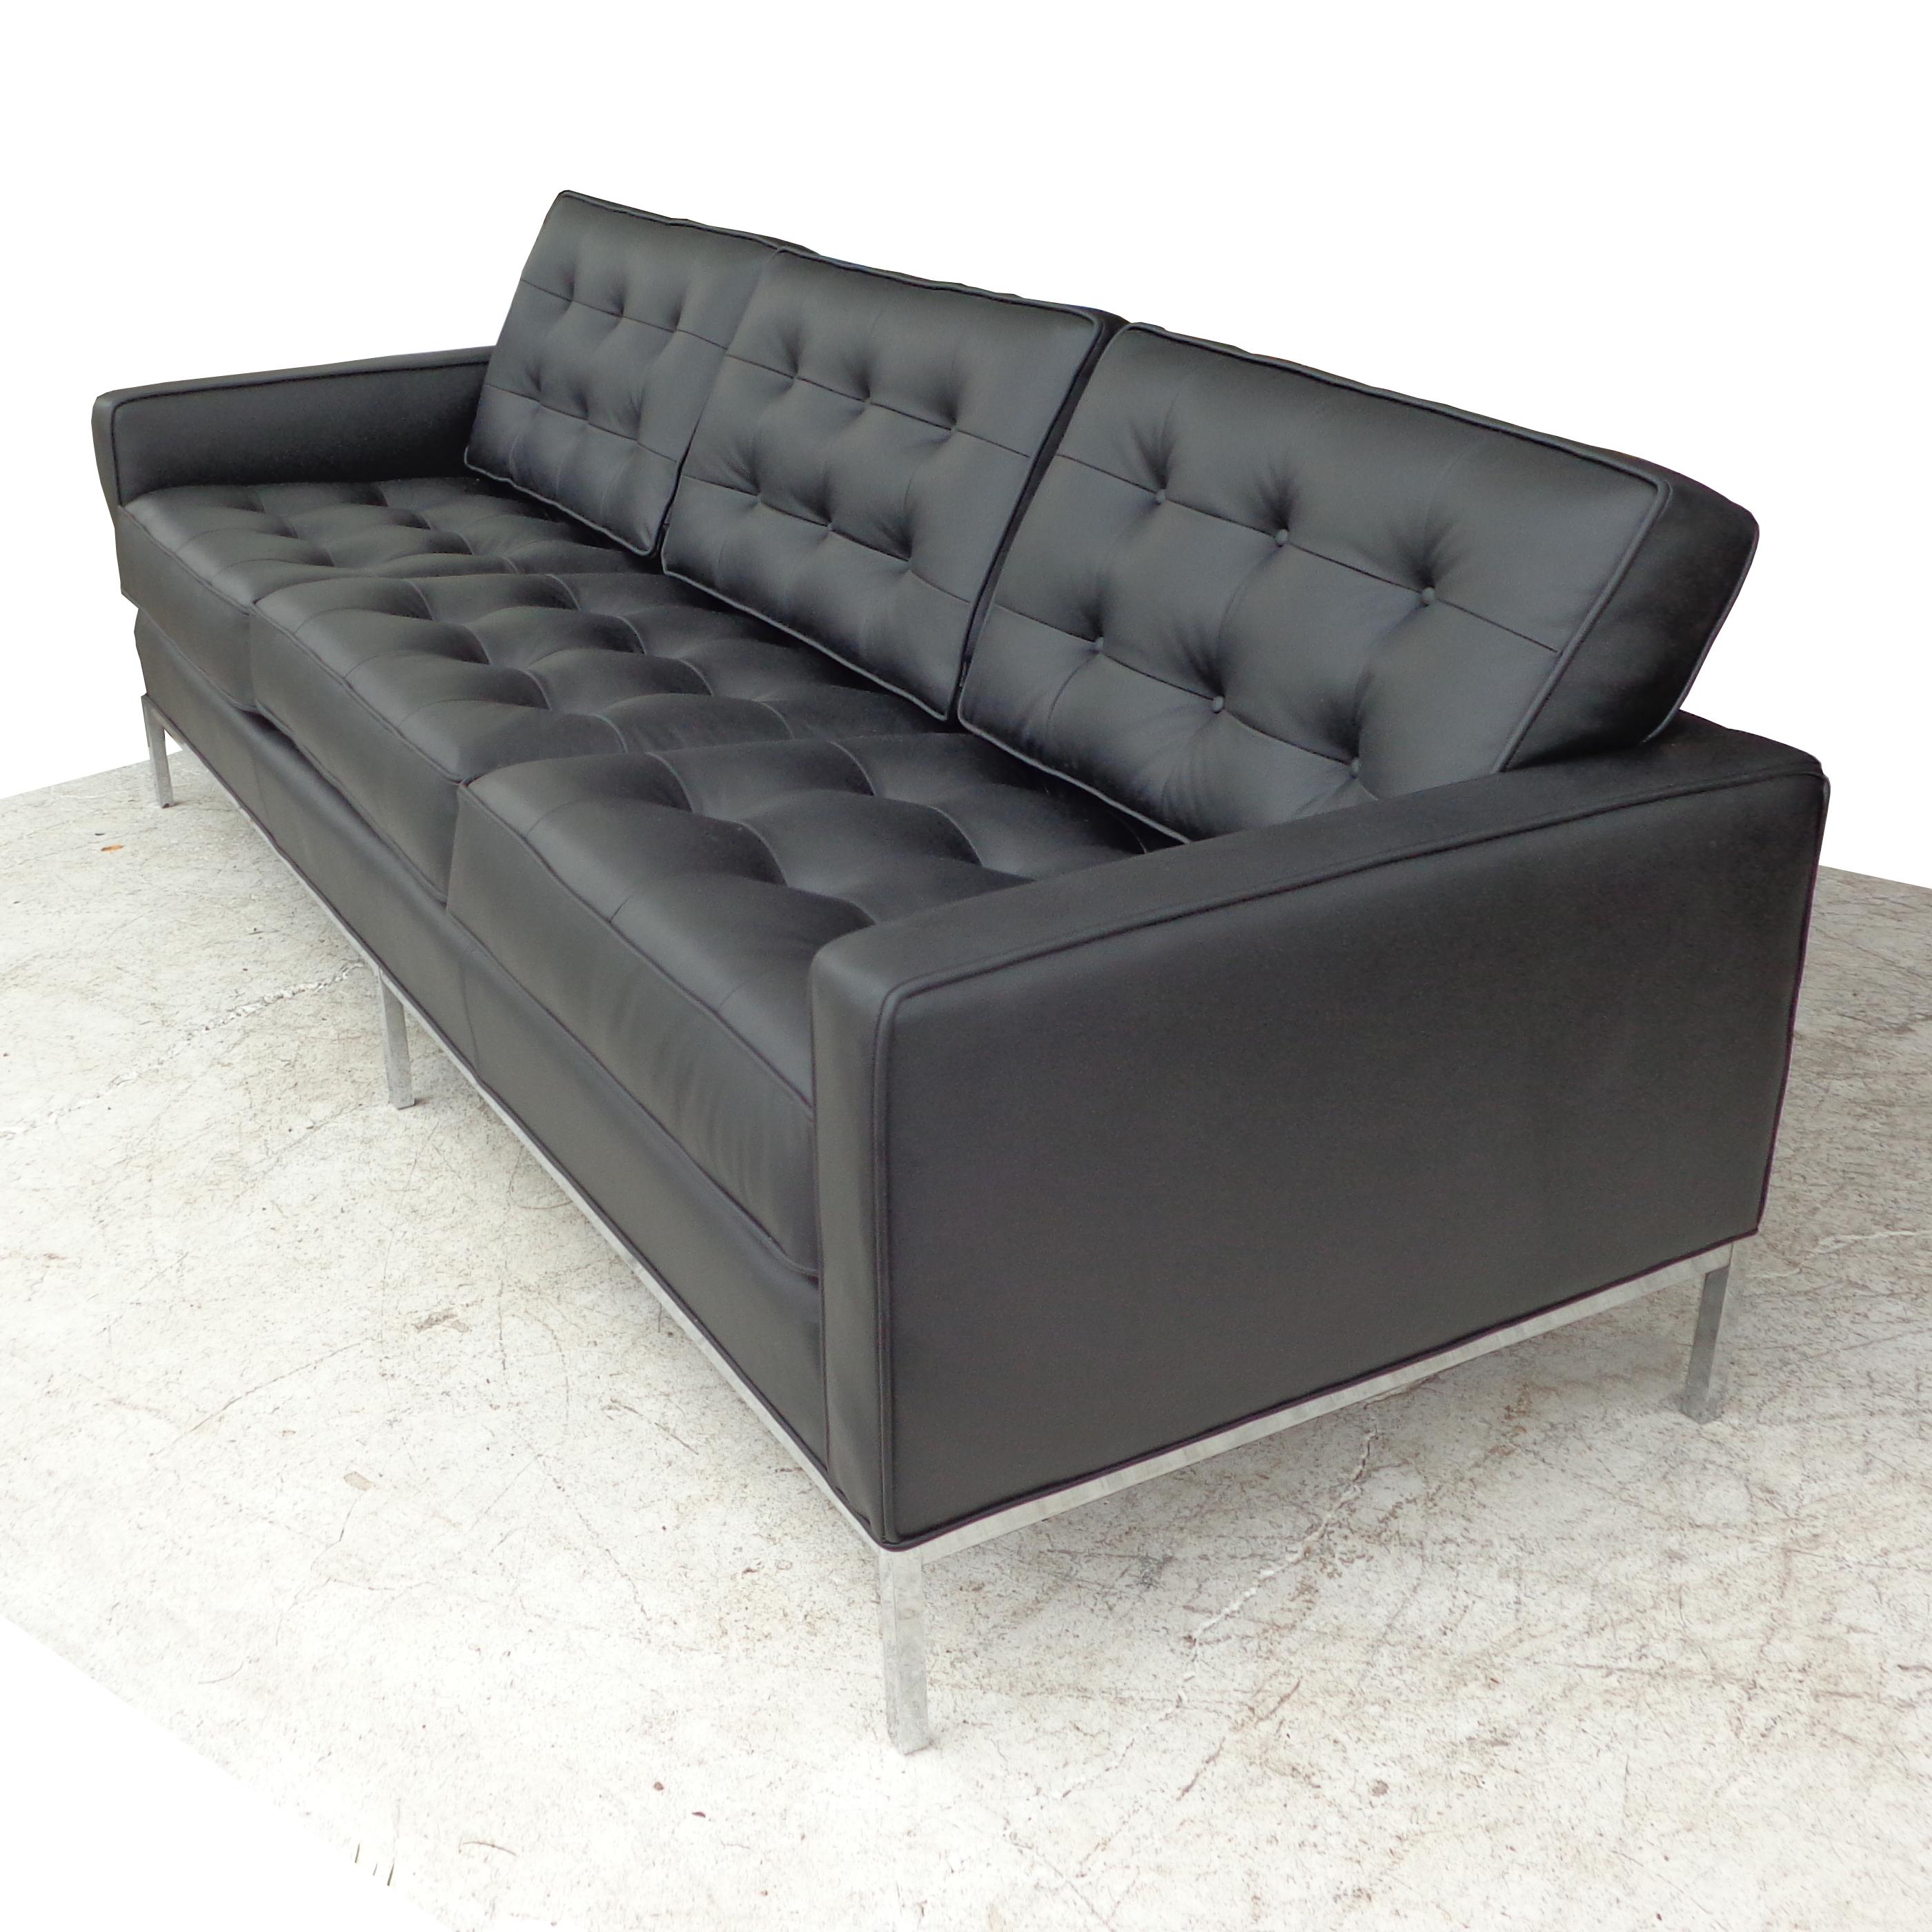 Ein Knoll-Klassiker aus der Mitte des Jahrhunderts, entworfen von Florence Knoll. Dieses Dreisitzer-Sofa verfügt über eine getuftete schwarze Lederpolsterung und verchromte Stahlbeine. Maße: 90